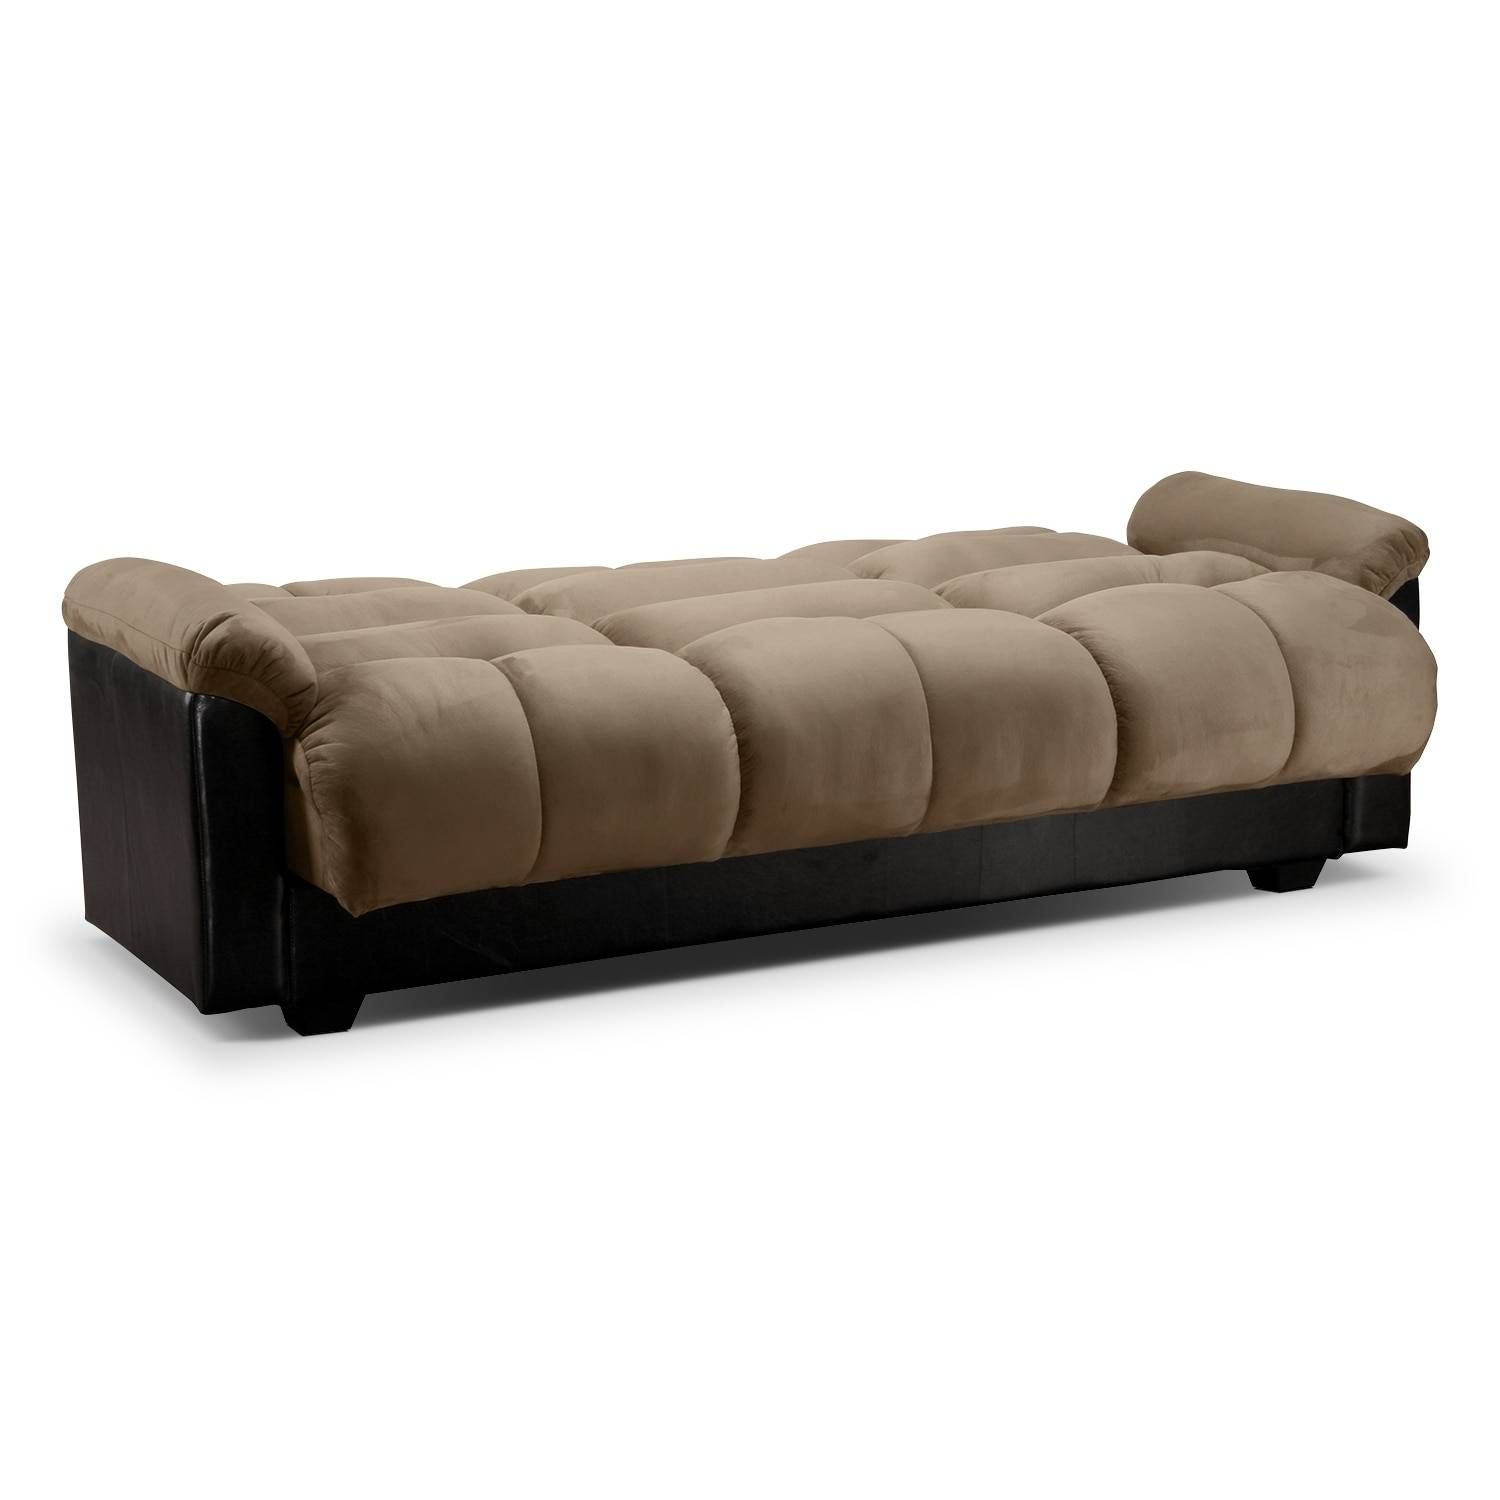 Ara Futon Sofa Bed With Storage – Hazelnut | American Signature With Sofa Beds With Storages (Photo 19 of 30)